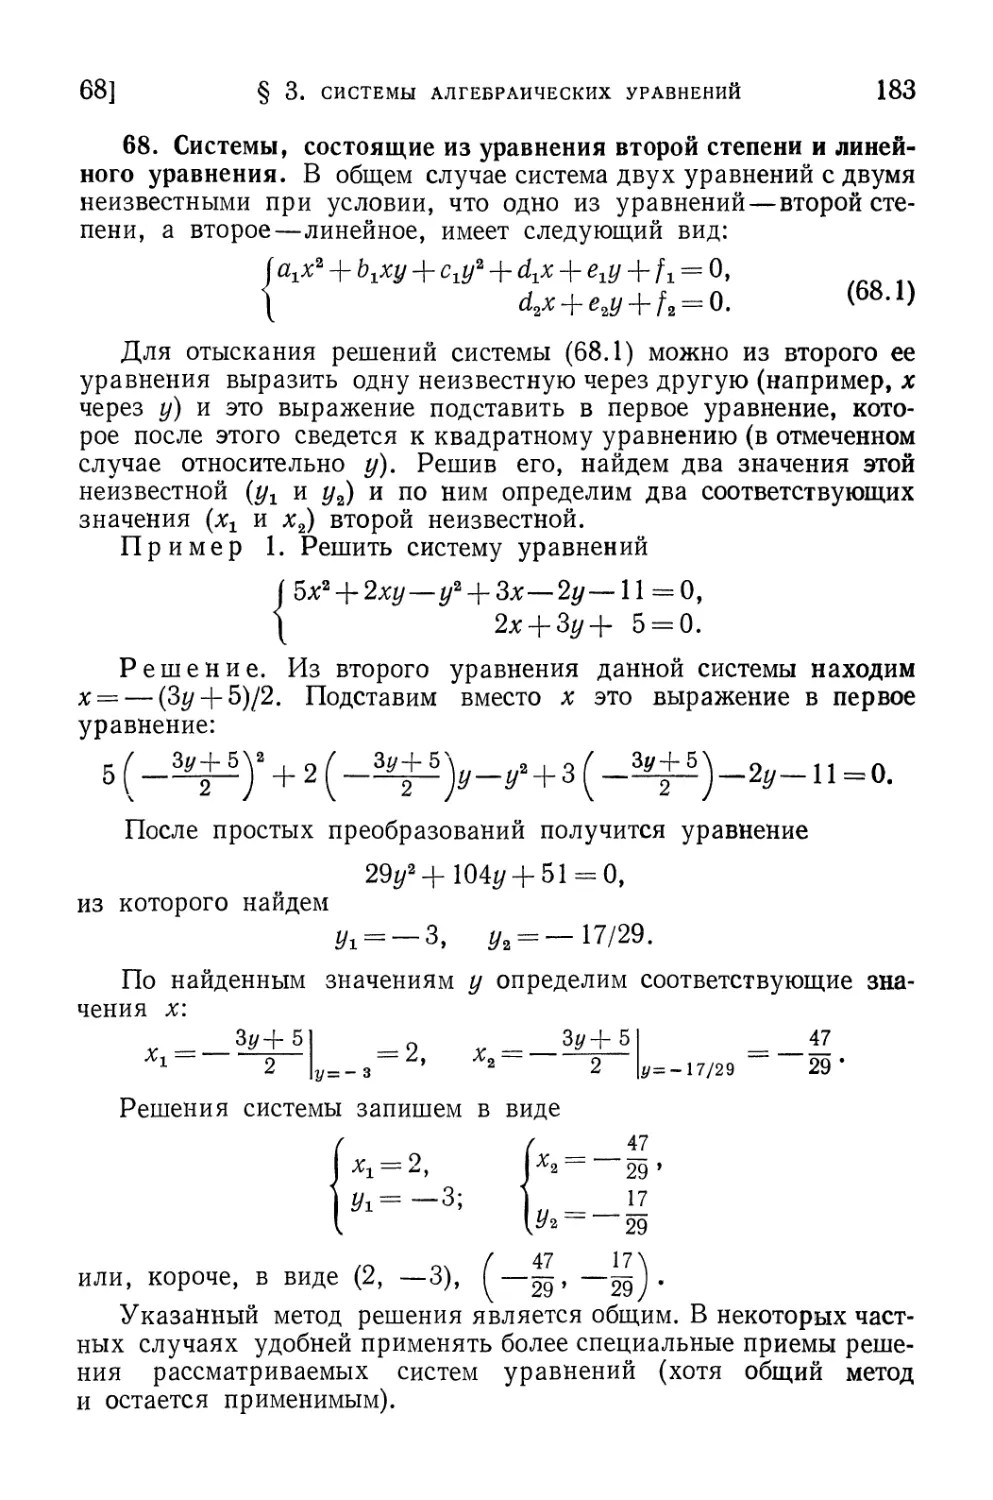 68. Системы, состоящие из уравнения второй степени и линейного уравнения